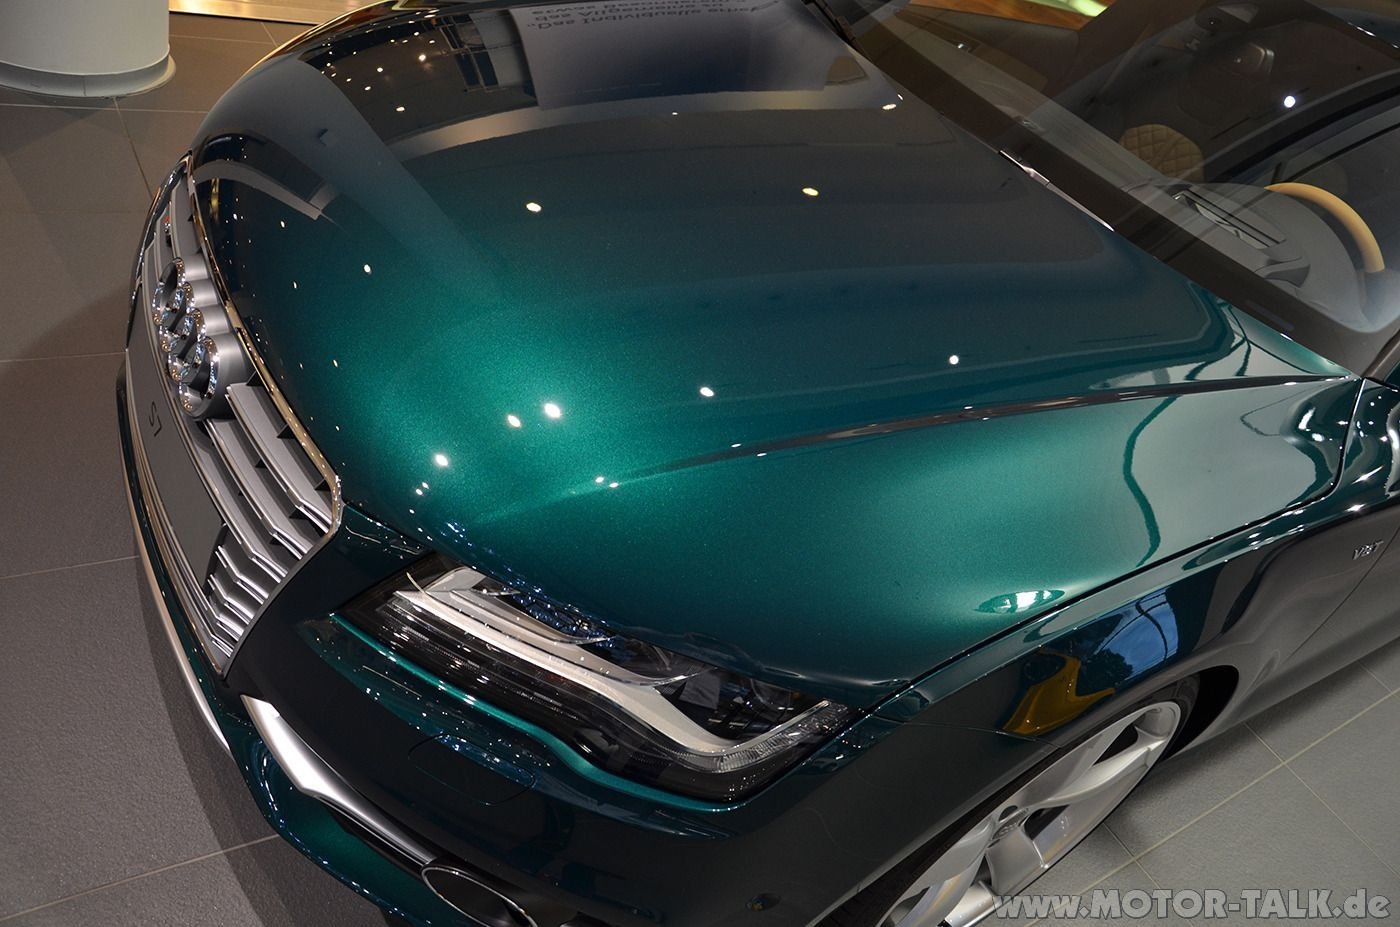 Перламутровый металлик. Audi Exclusive Emerald Green. Ксералик Кэнди. Emerald Green Metallic краска. Emerald Green (изумрудно-зеленый металлик) (EMG) — e501421000emg.